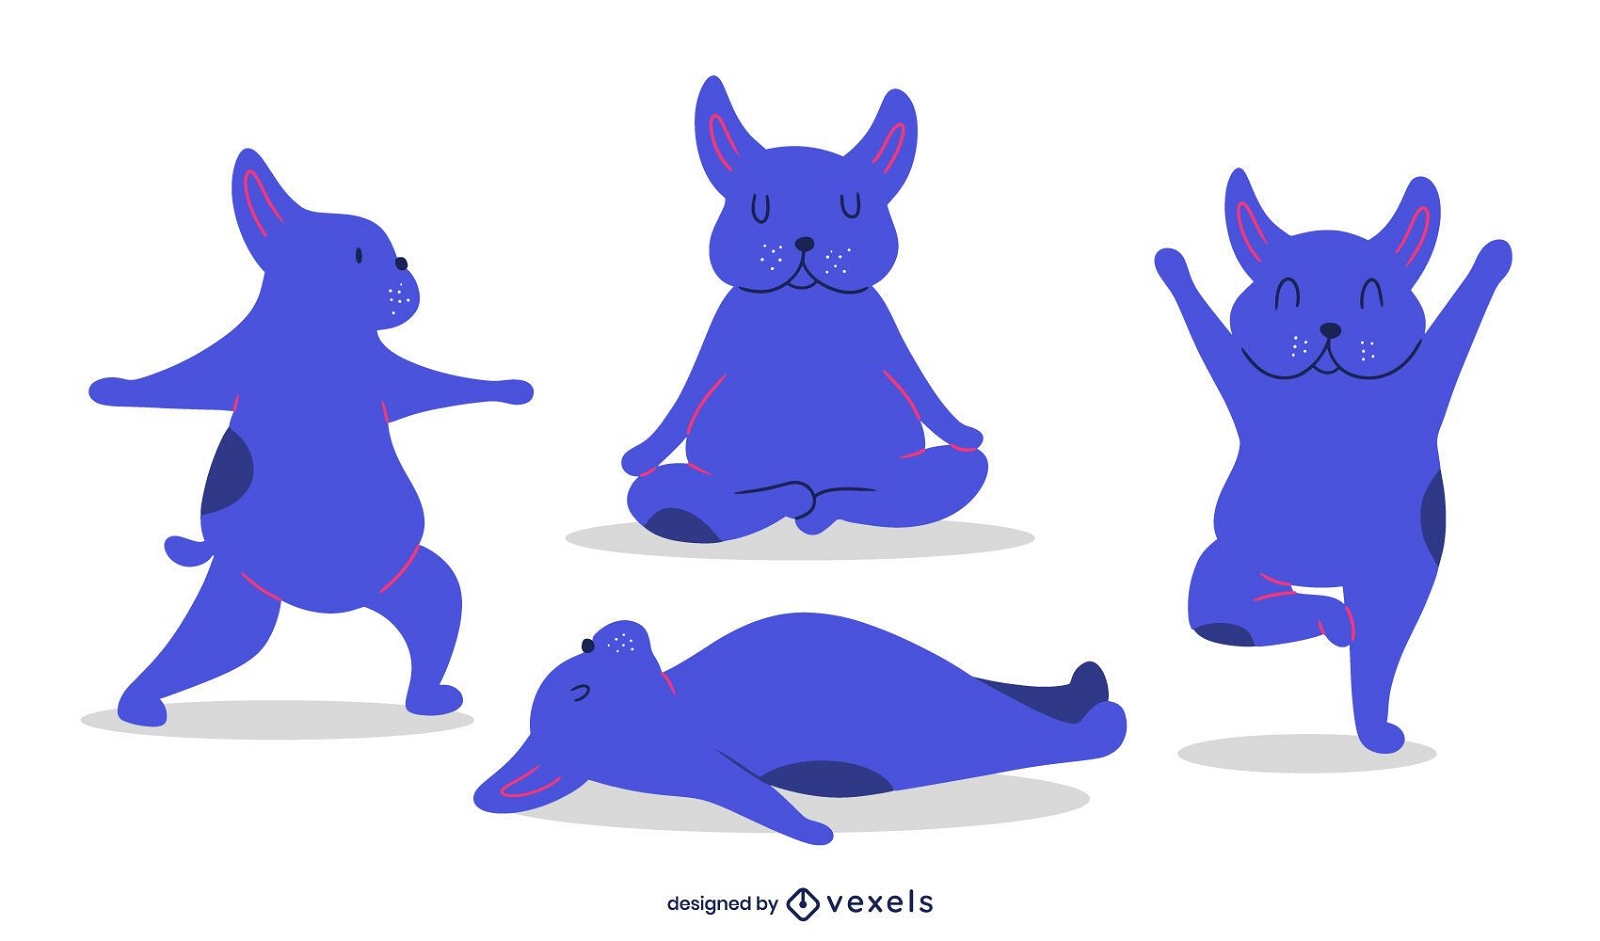 Dog yoga poses illustration set